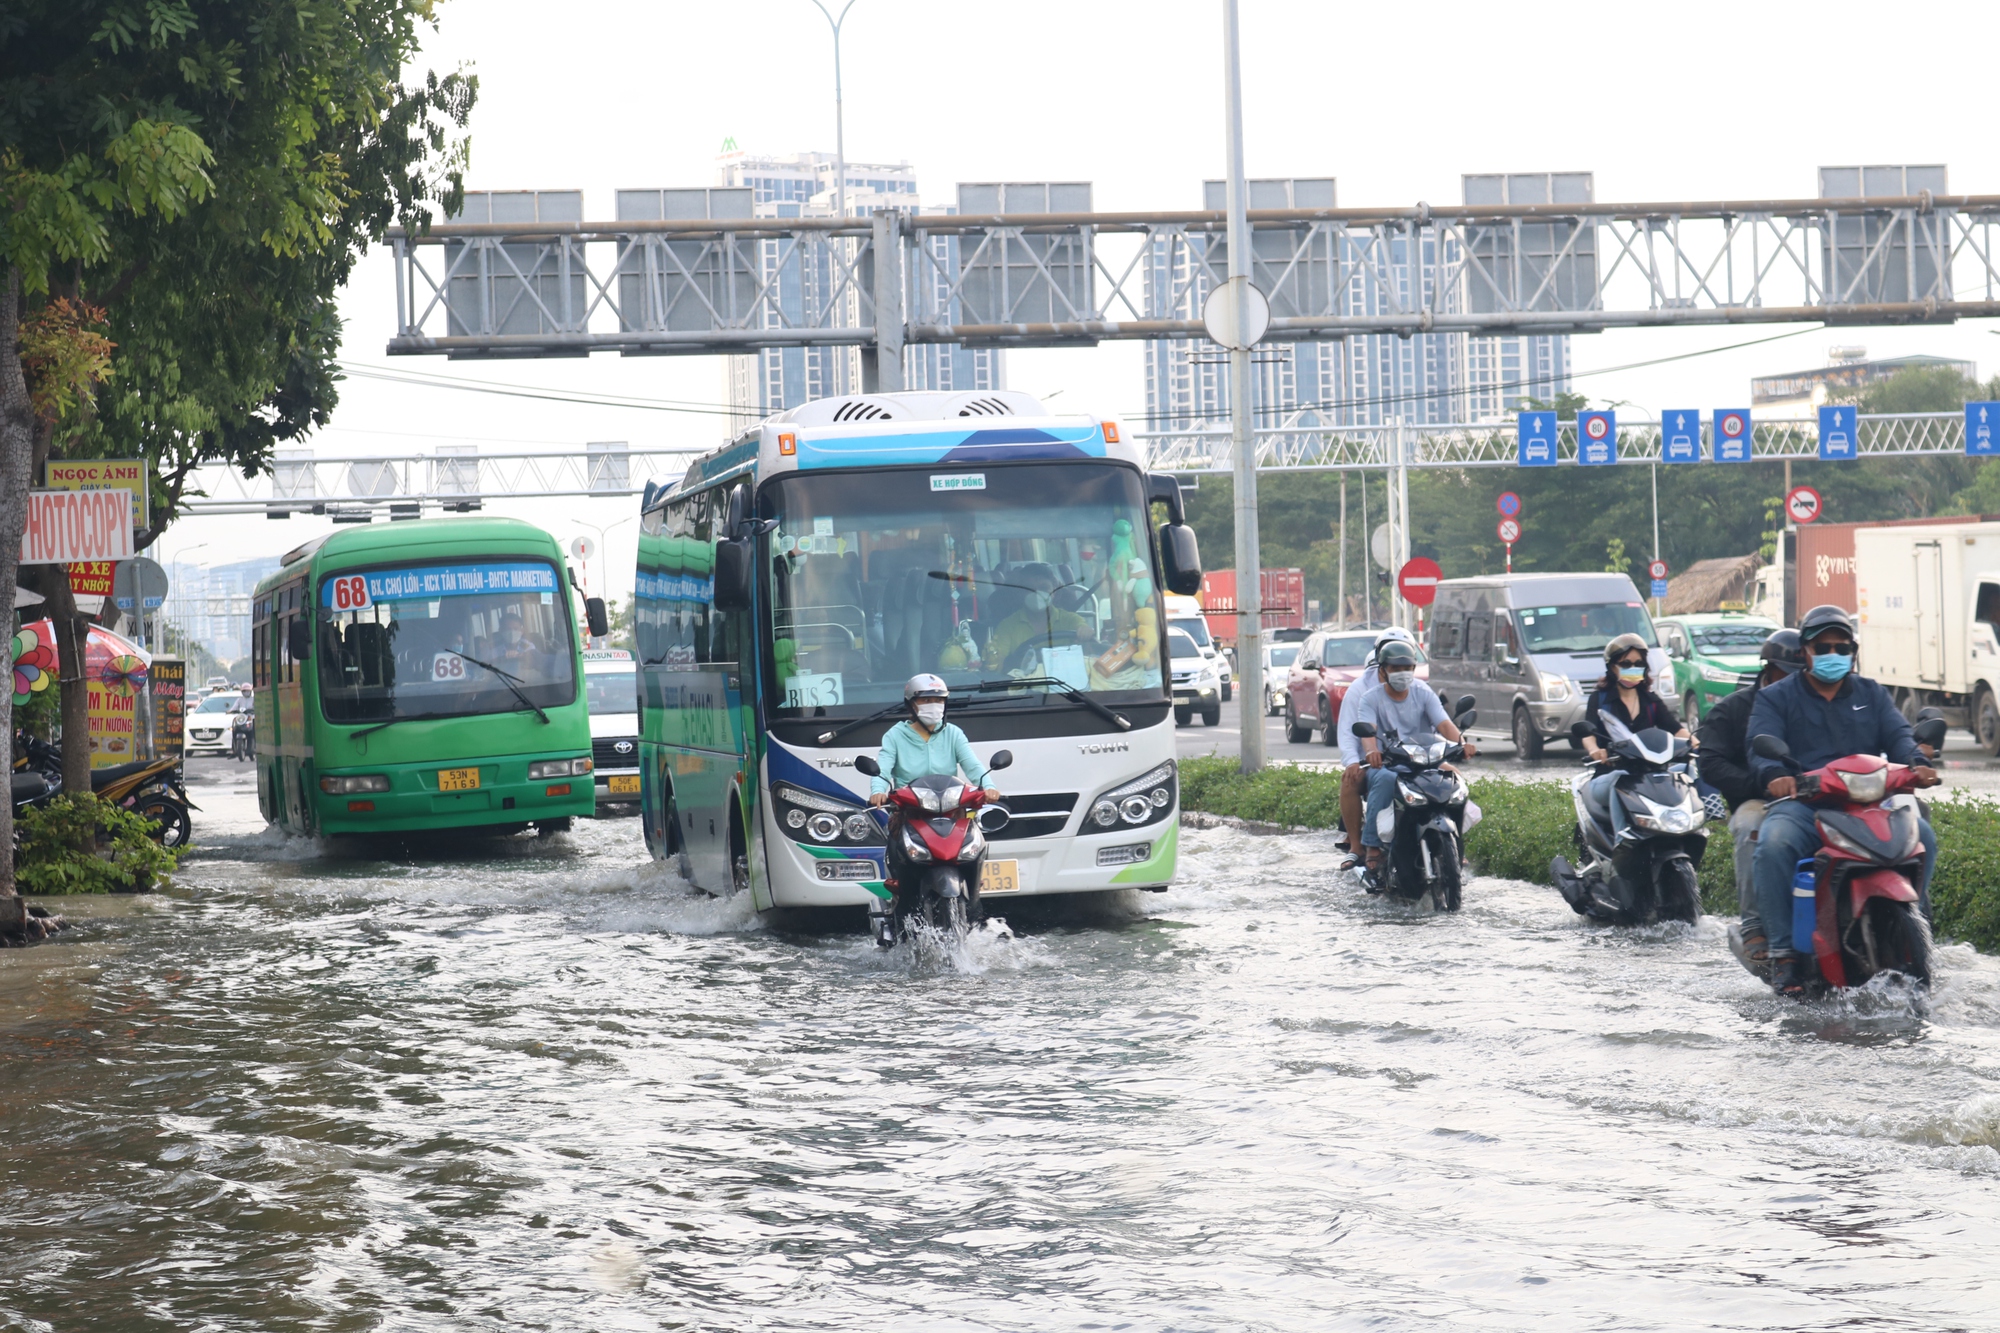 Triều cường TP HCM: Mưa lớn, triều cường là những thách thức về mặt thời tiết mà thành phố Hồ Chí Minh thường xuyên đối mặt. Tuy nhiên, những hình ảnh về triều cường cũng mang đến cho du khách nhiều trải nghiệm độc đáo, mang tính ấn tượng cao. Hãy xem hình ảnh để hiểu rõ hơn về tình hình thời tiết của thành phố.